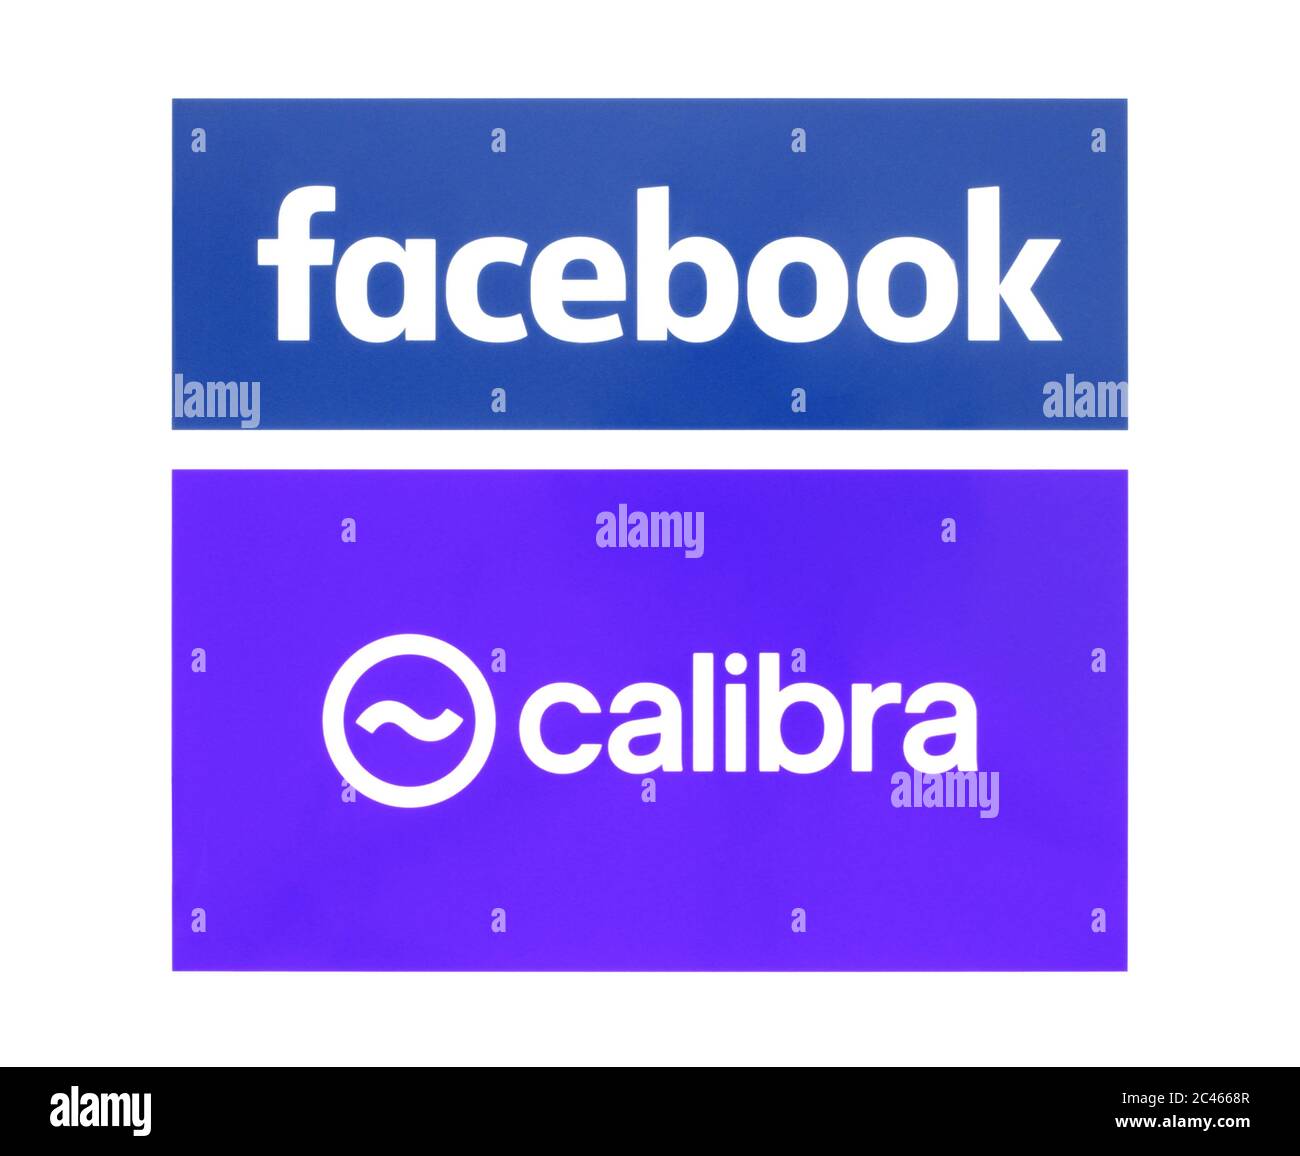 Kiew, Ukraine - 19. Juni 2019: Facebook und Calibra-Logos auf Papier gedruckt. Facebook startet Libra, seine eigene Kryptowährung. Calibra ist eine neue digitale Stockfoto